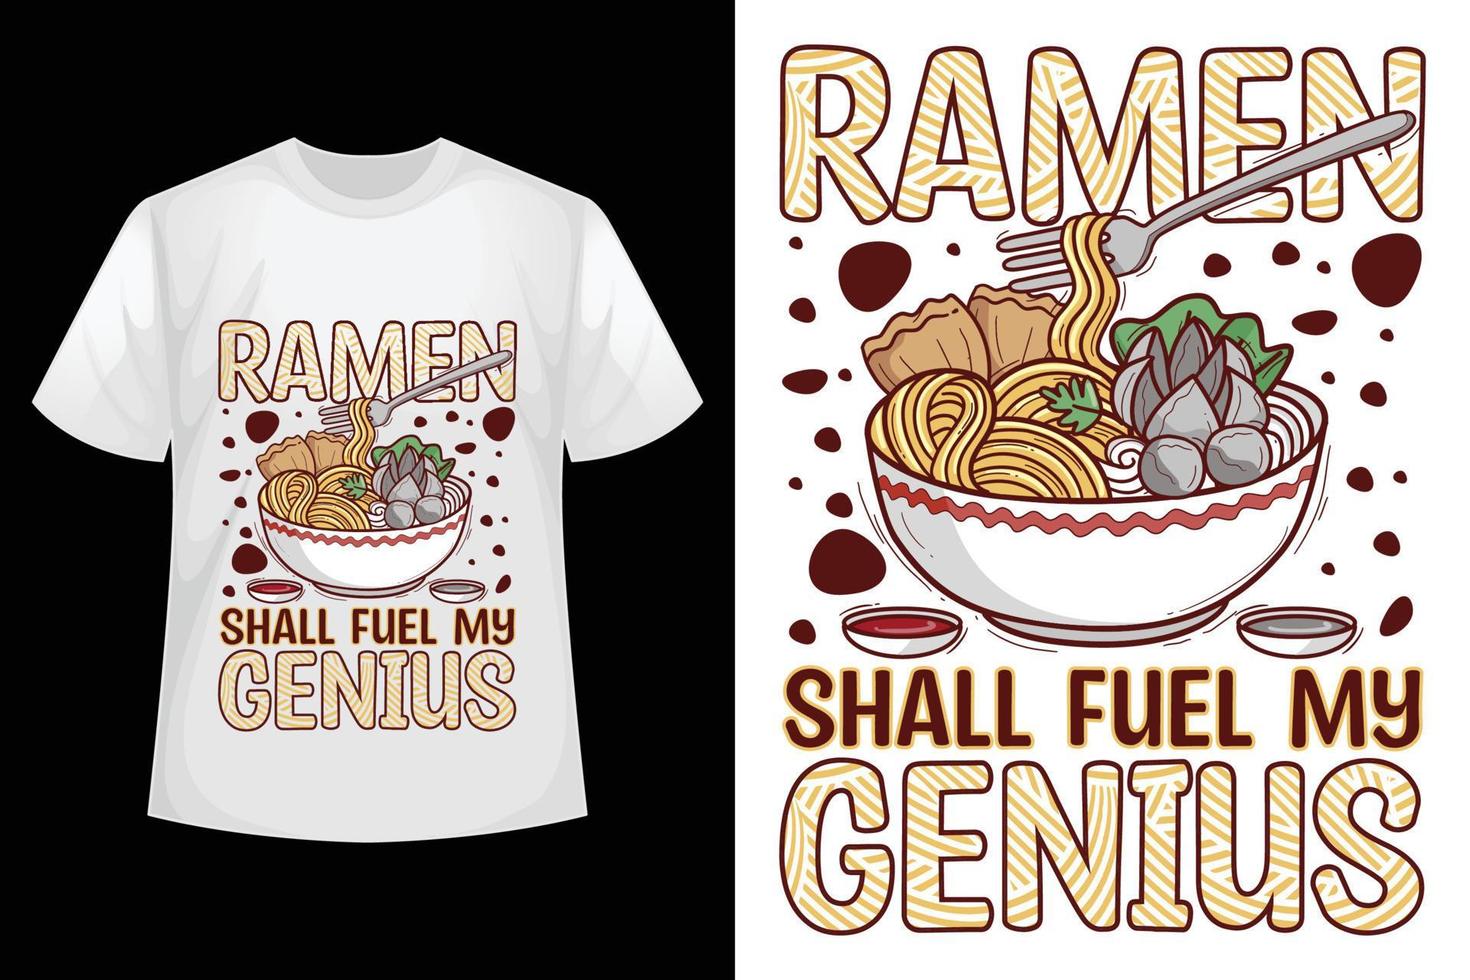 Ramen shall fuel my genius - Ramen t-shirt design template. vector